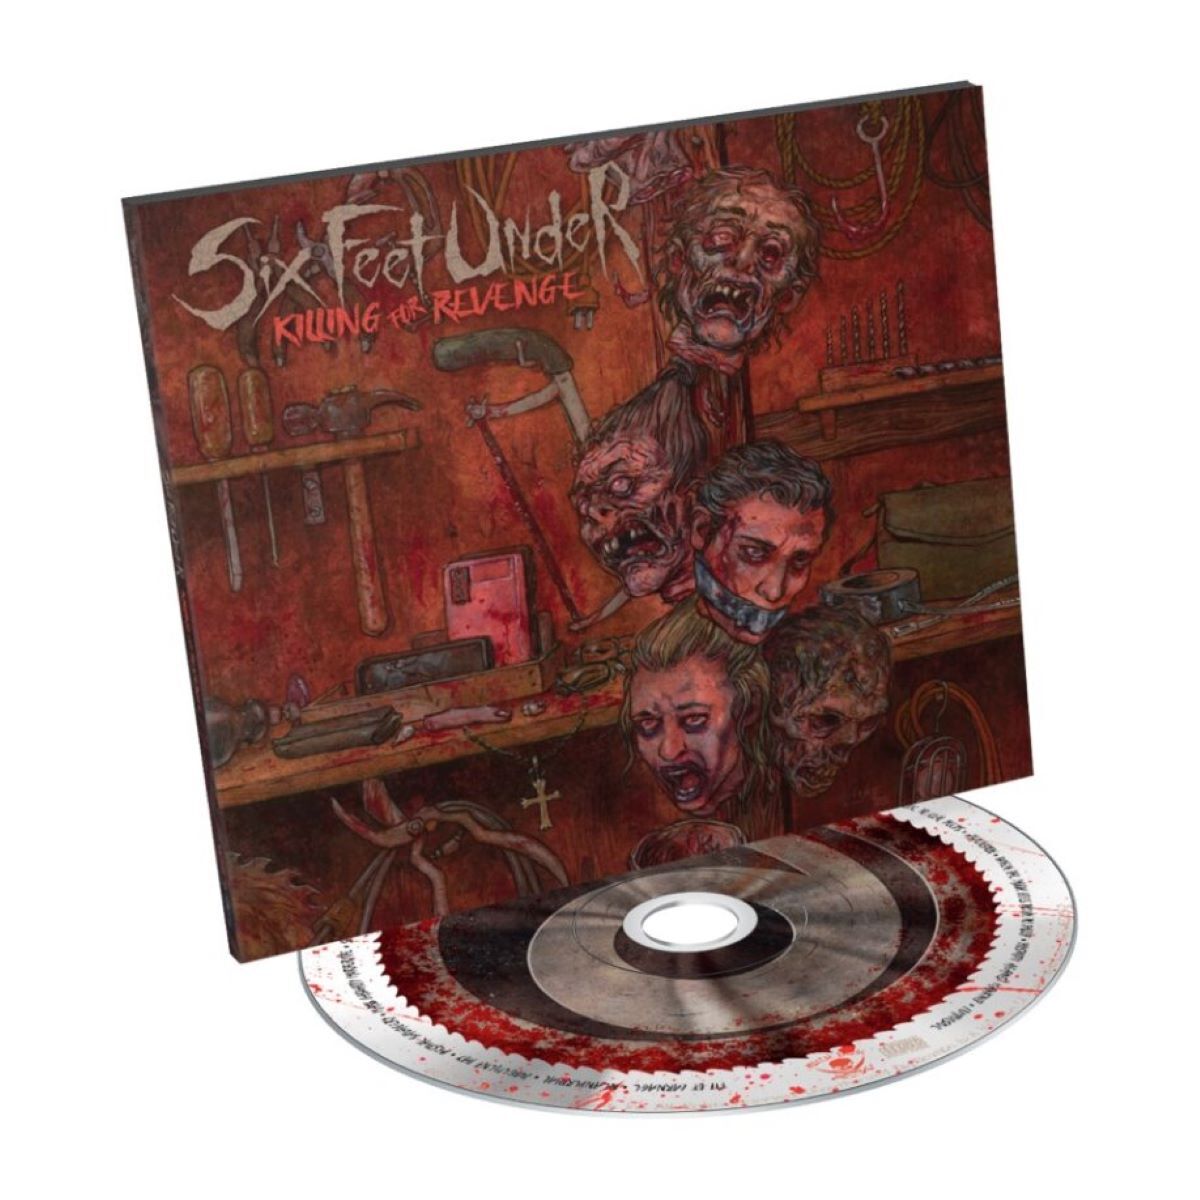 Killing for revenge von Six Feet Under - CD (Digipak)